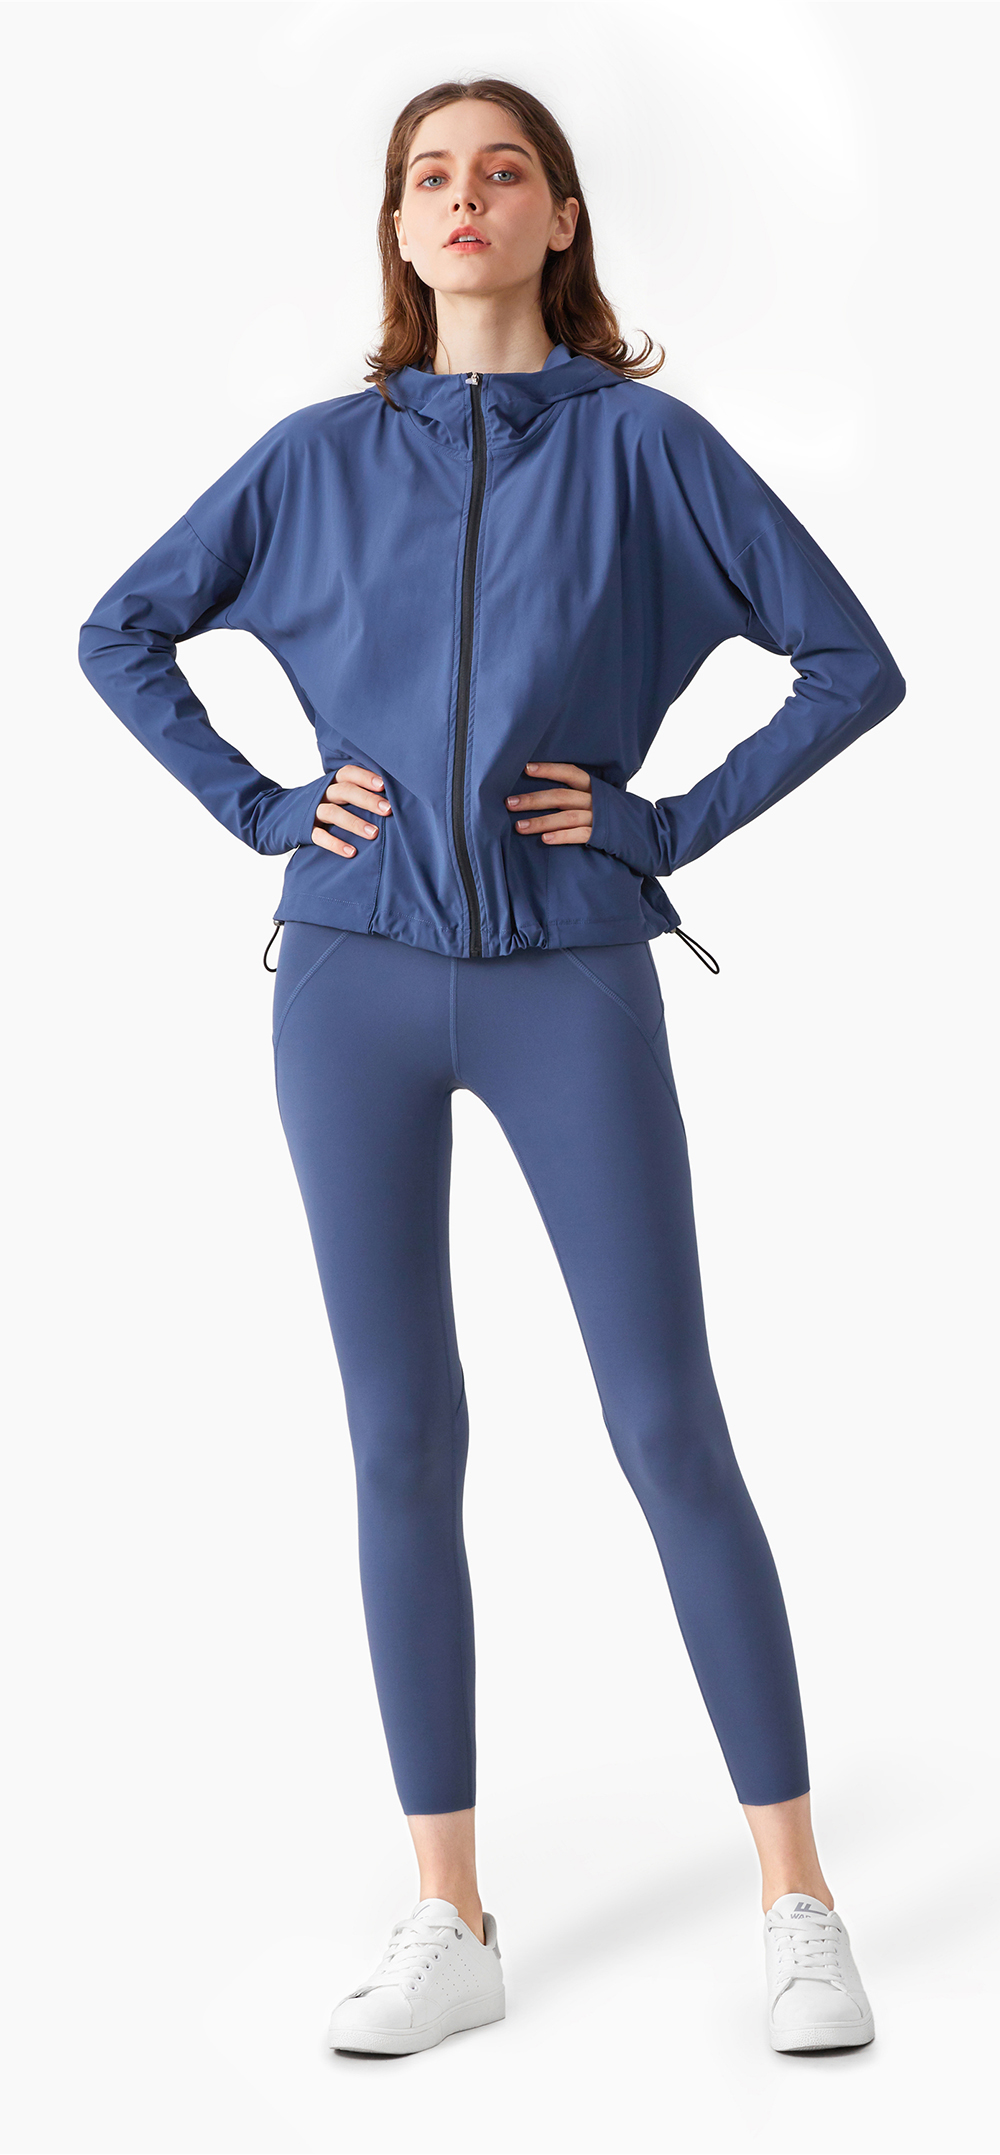 Hergymclothing zip up exercise jacket blue and yoga leggings blue